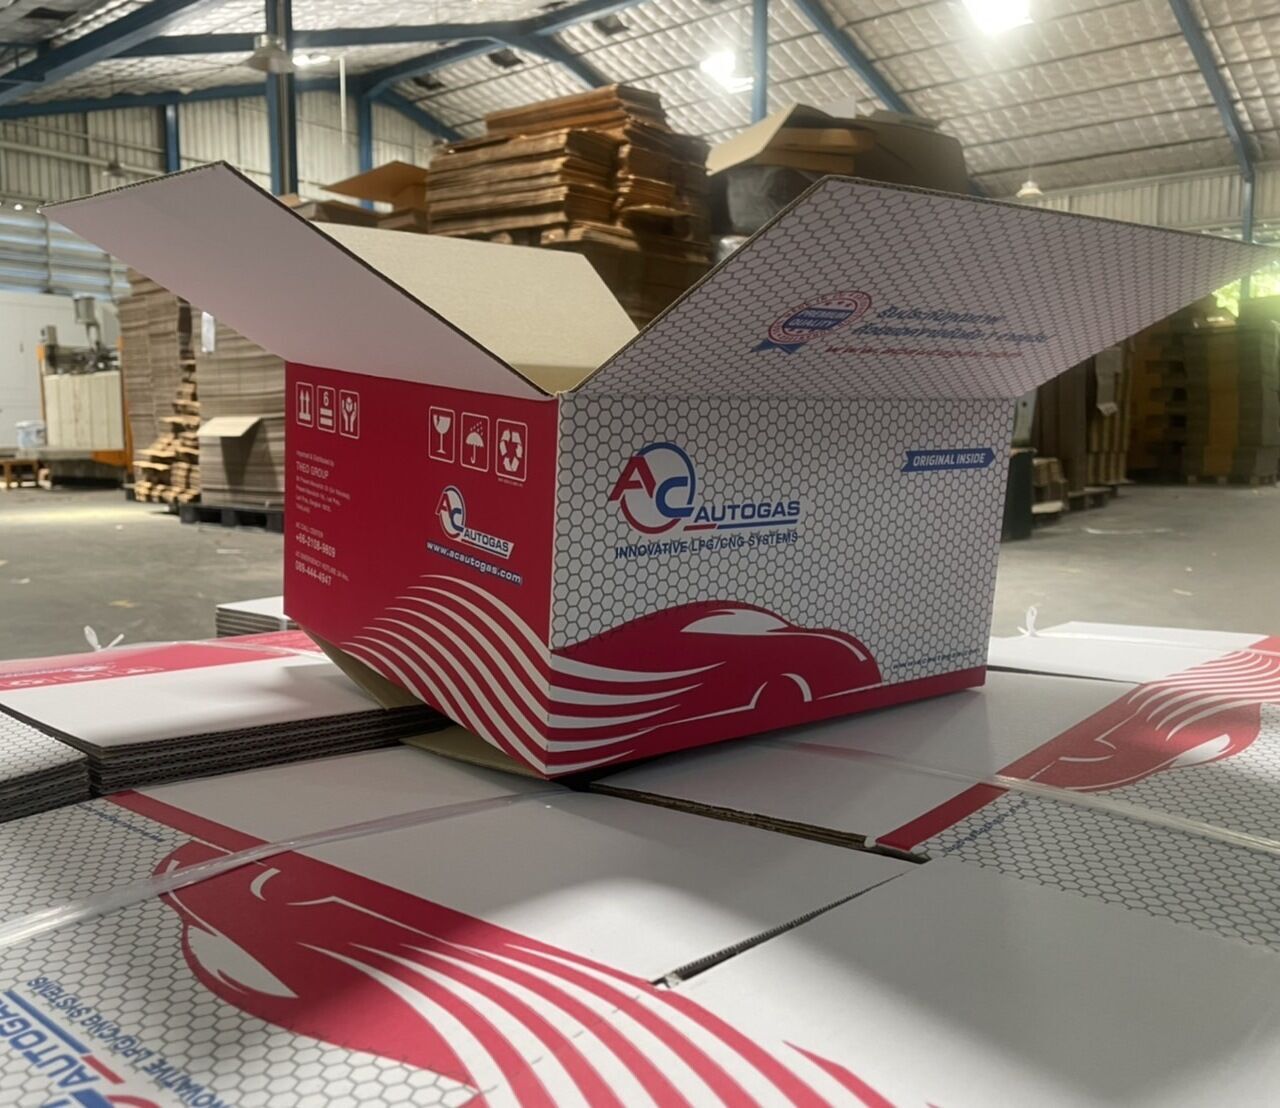 โรงงานกล่องเเคสคาร์ตั้นรับผลิตกล่องกระดาษลูกฟูกใส่อะไหล่รถยนต์เช่นเเก๊สLPG